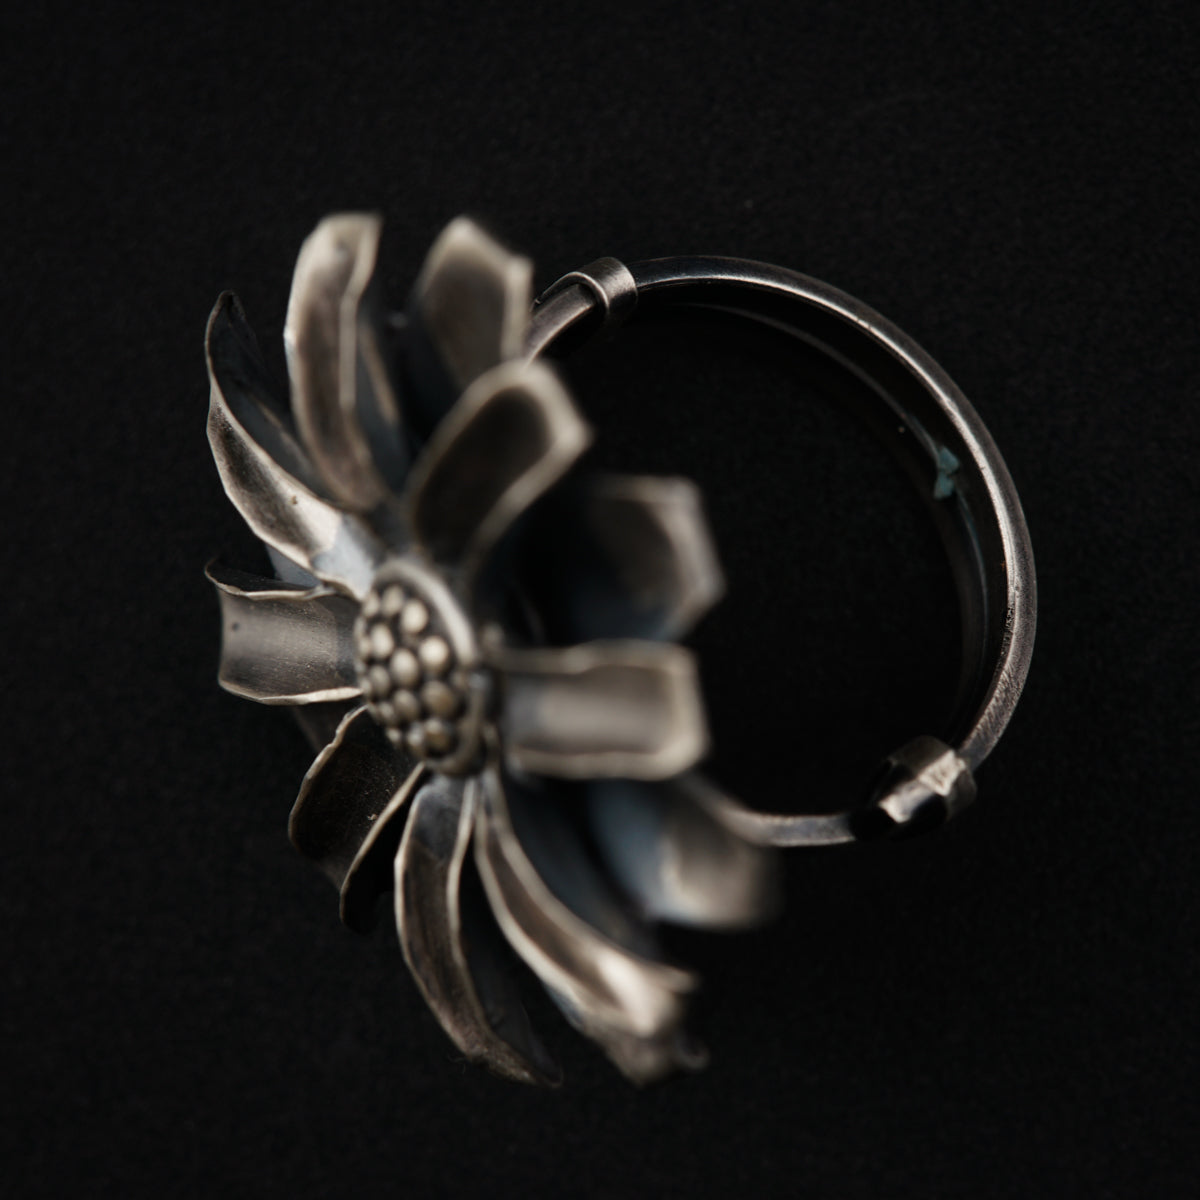 Silver Soorajmukhi (Flower Motif) Ring